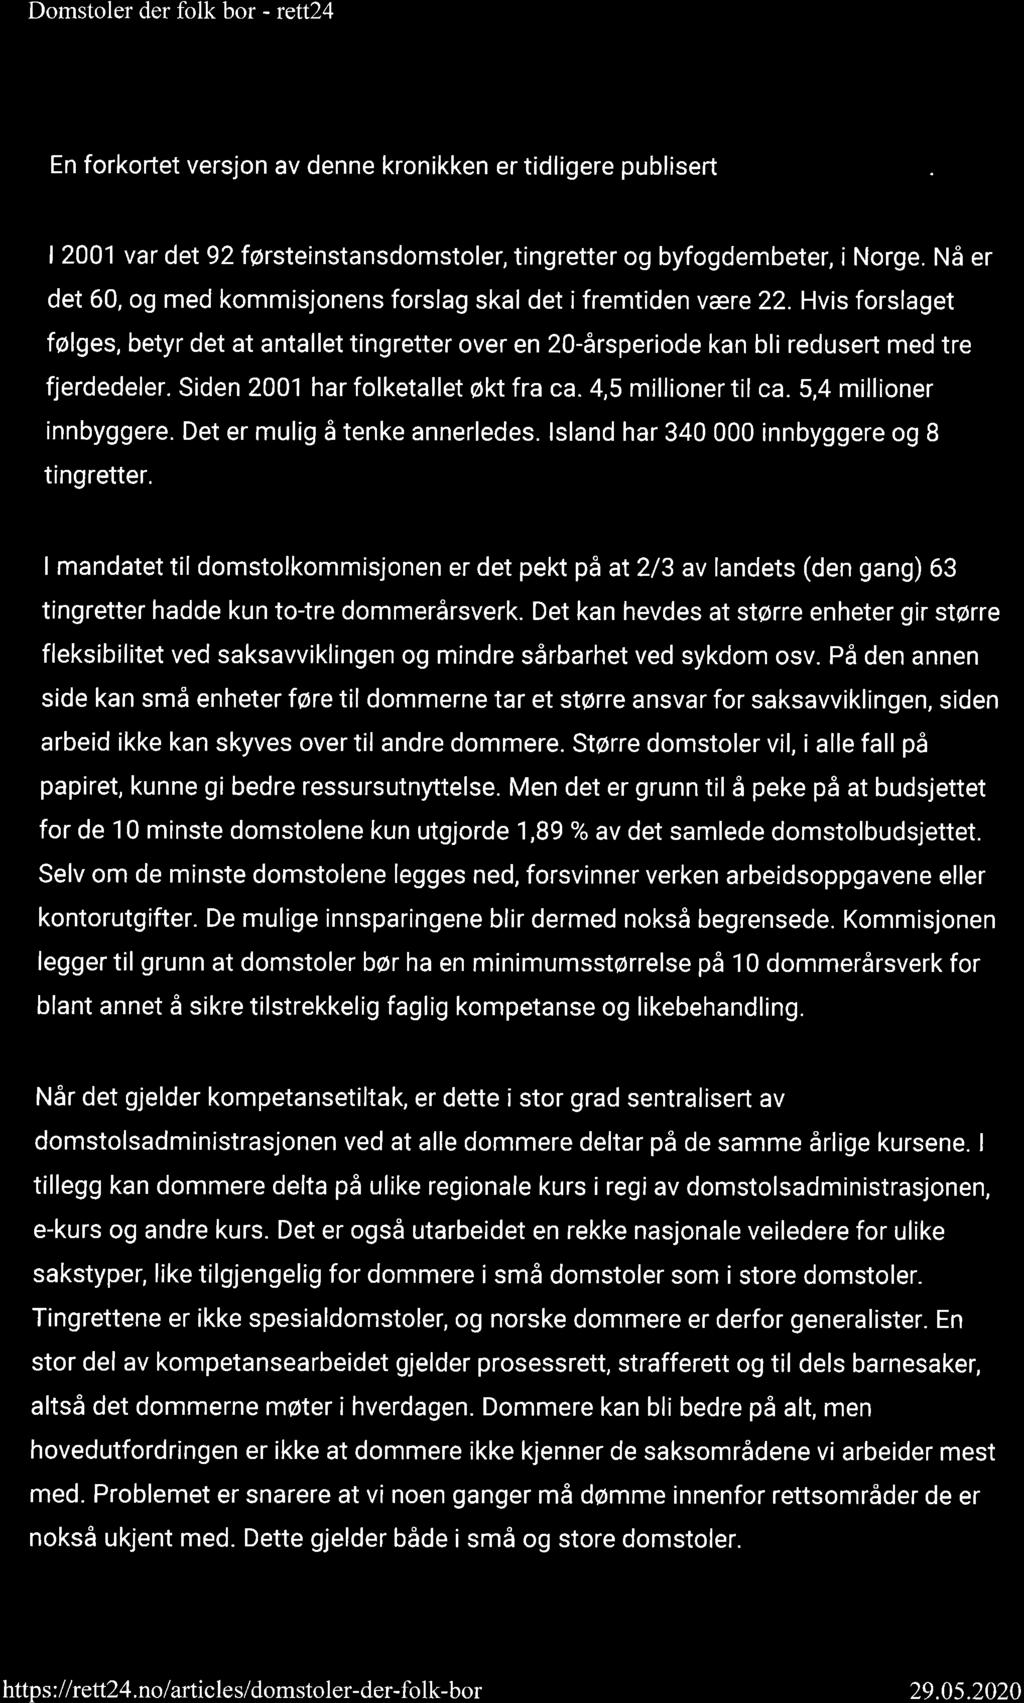 Domstoler der folk bor - rctt24 Page2 of9 1 1. oktober 2019 kl. 13:45 En forkortet versjon av denne kronikken er tidligere publisert i Bergens Tidende.